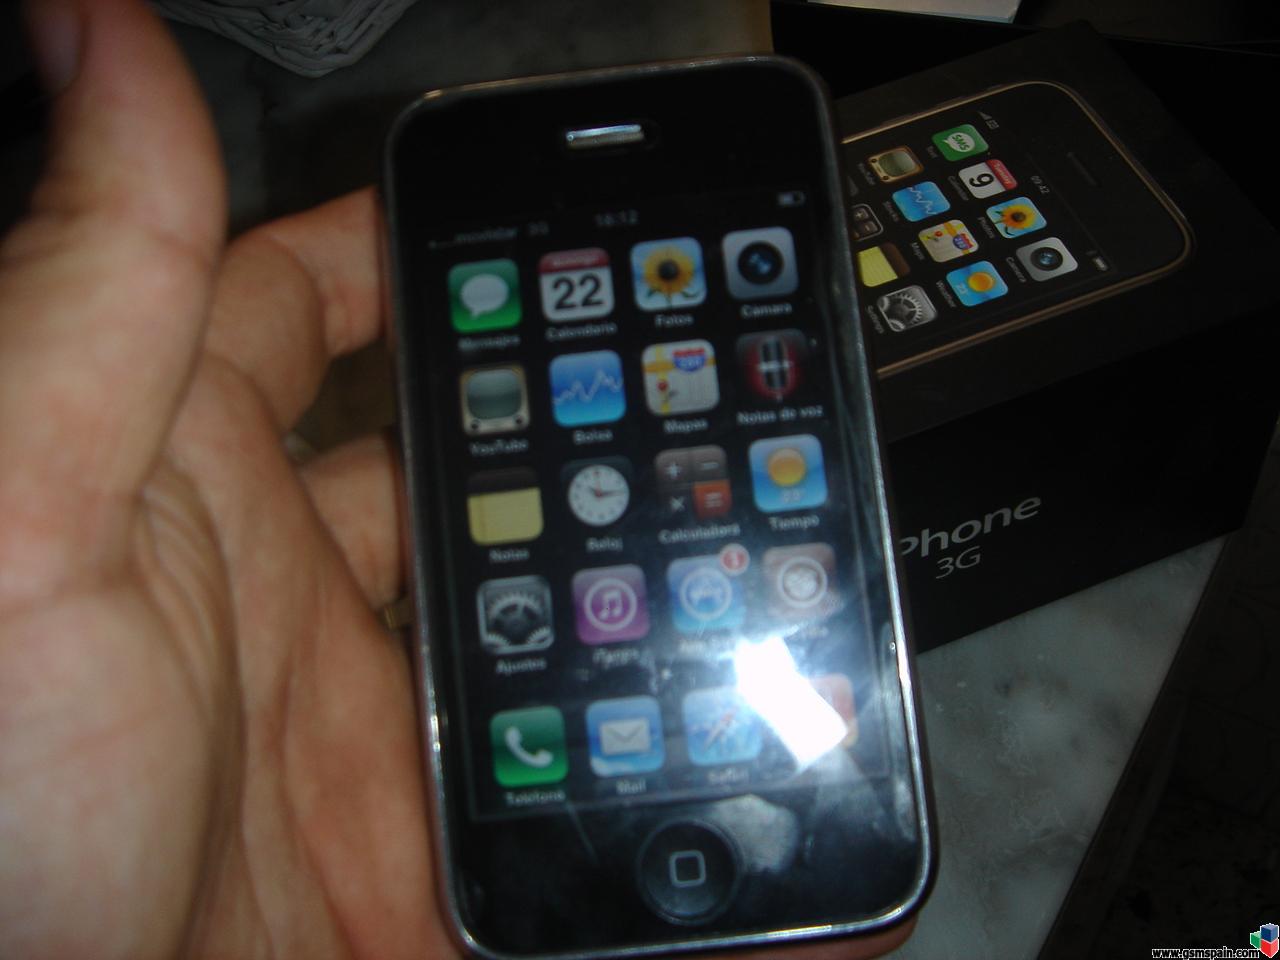 Vendo iPhone 3G 16gb